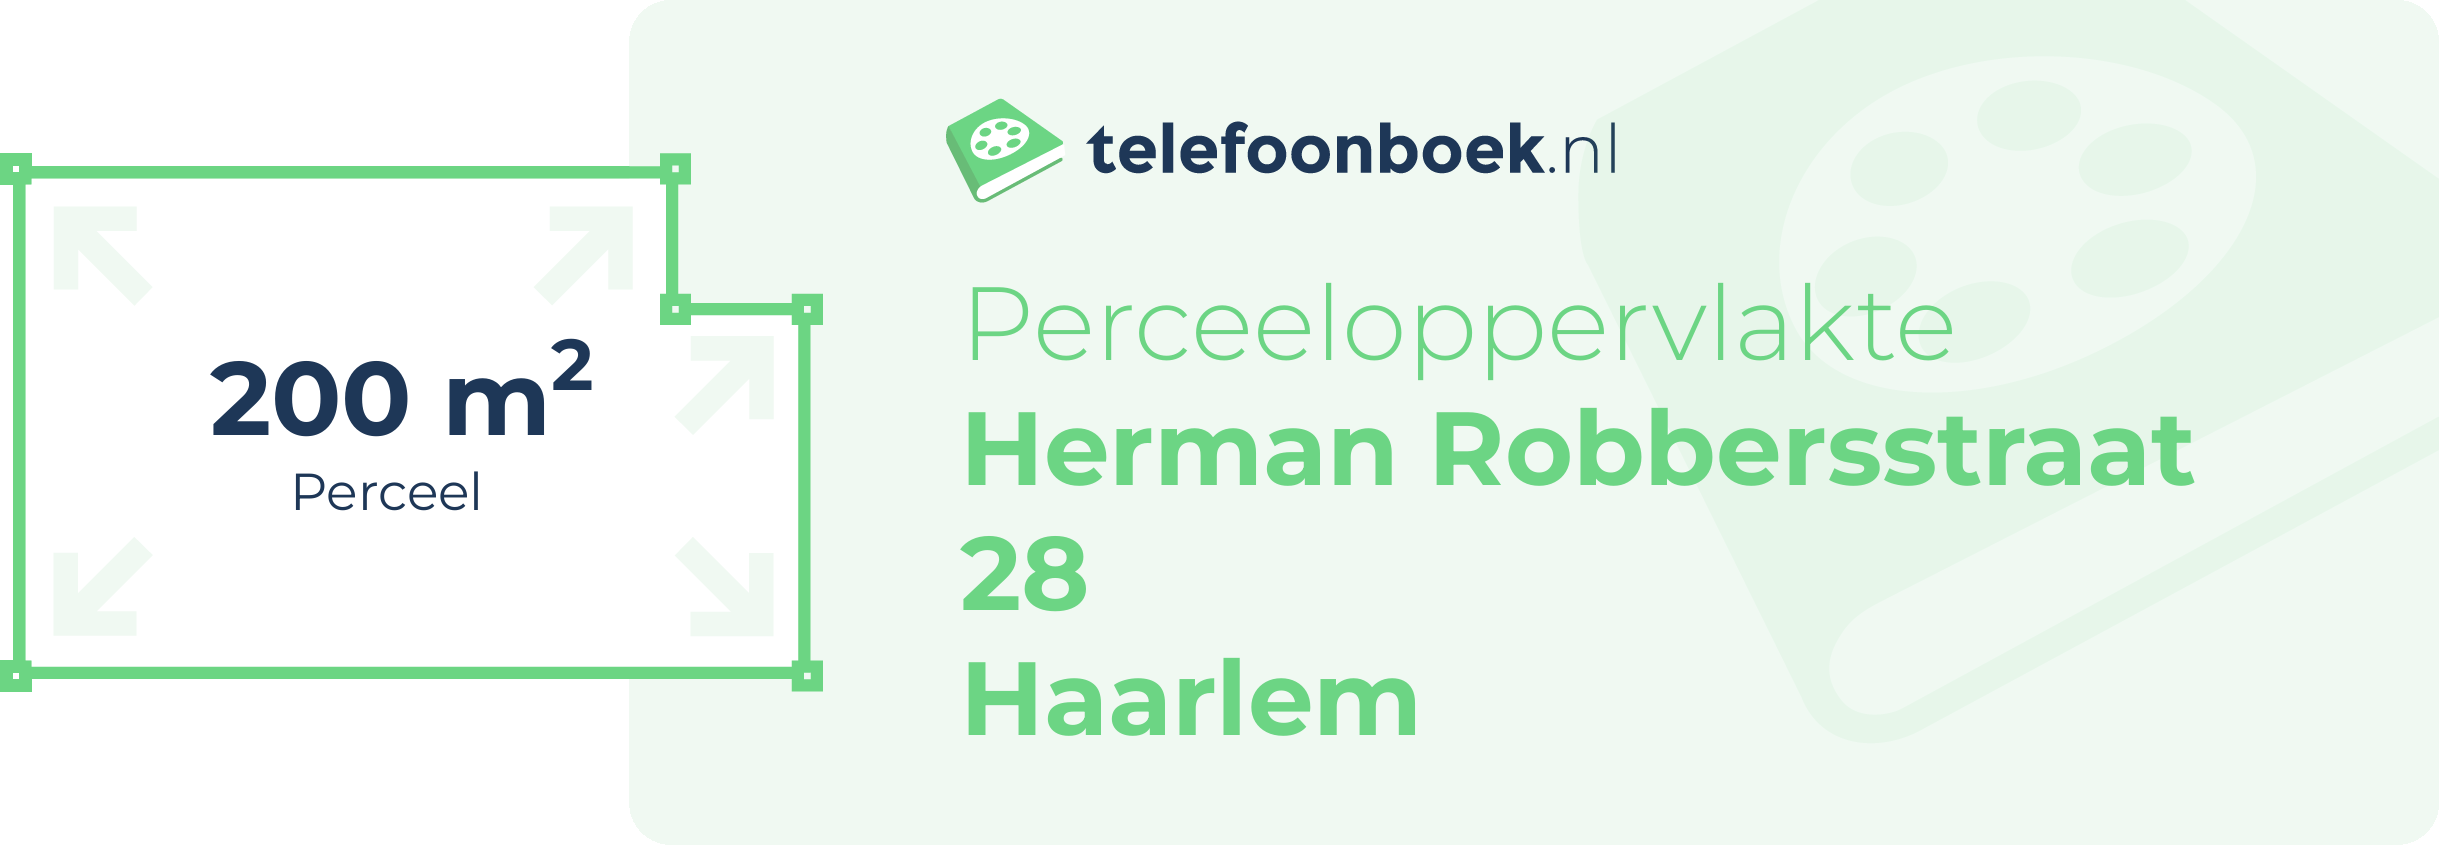 Perceeloppervlakte Herman Robbersstraat 28 Haarlem